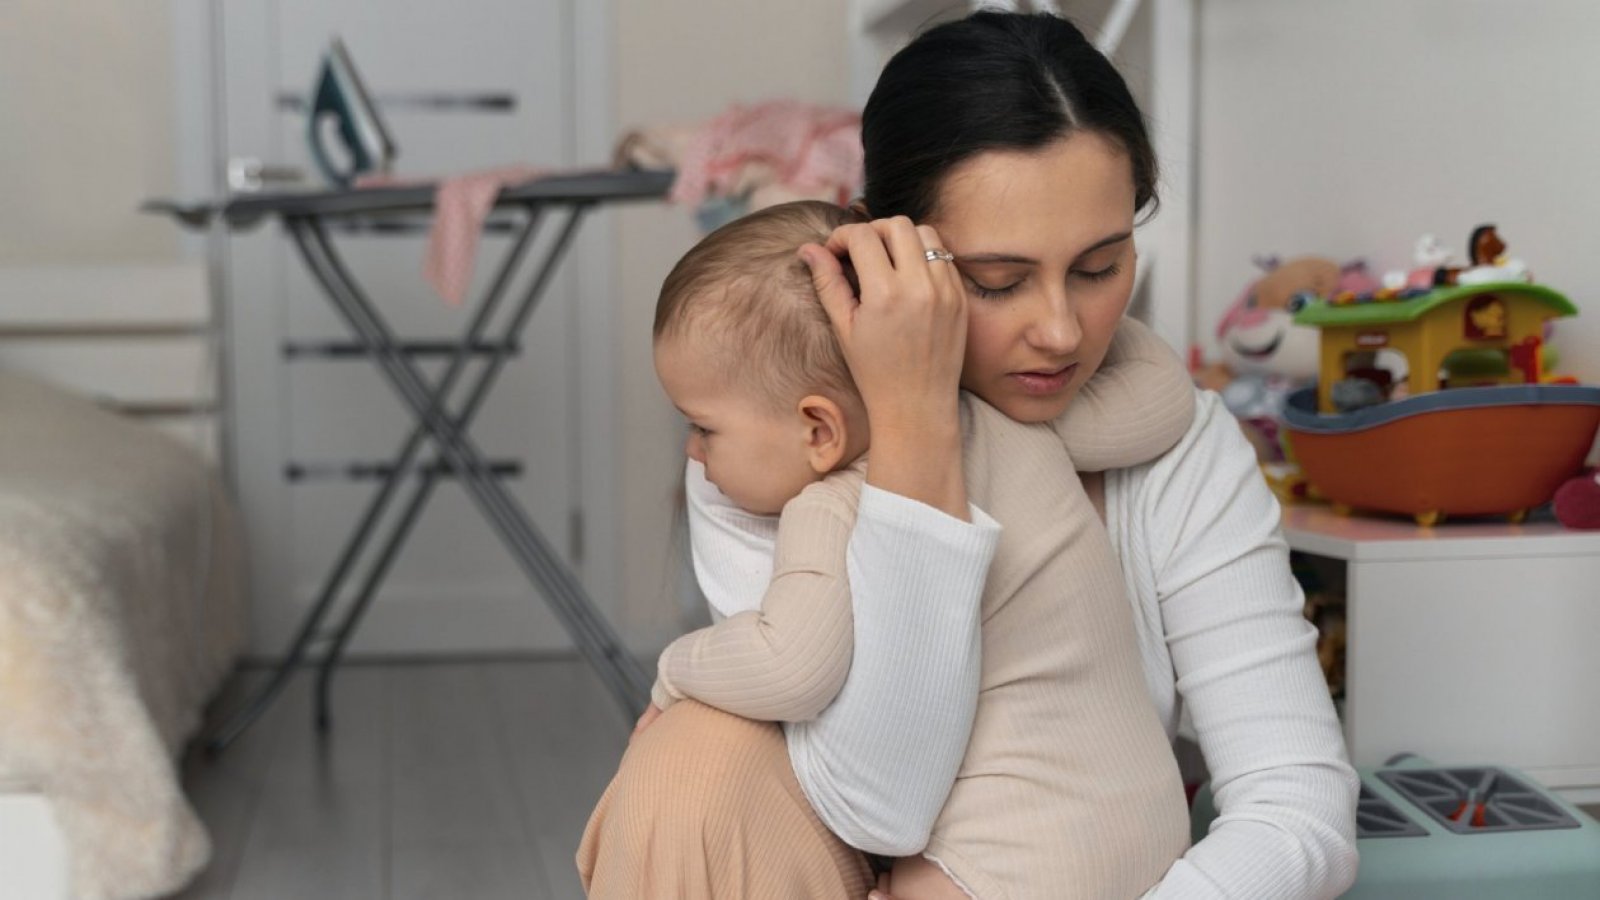 Día de la Madre: estudio revela que mamás Millennials son las menos felices y más estresadas